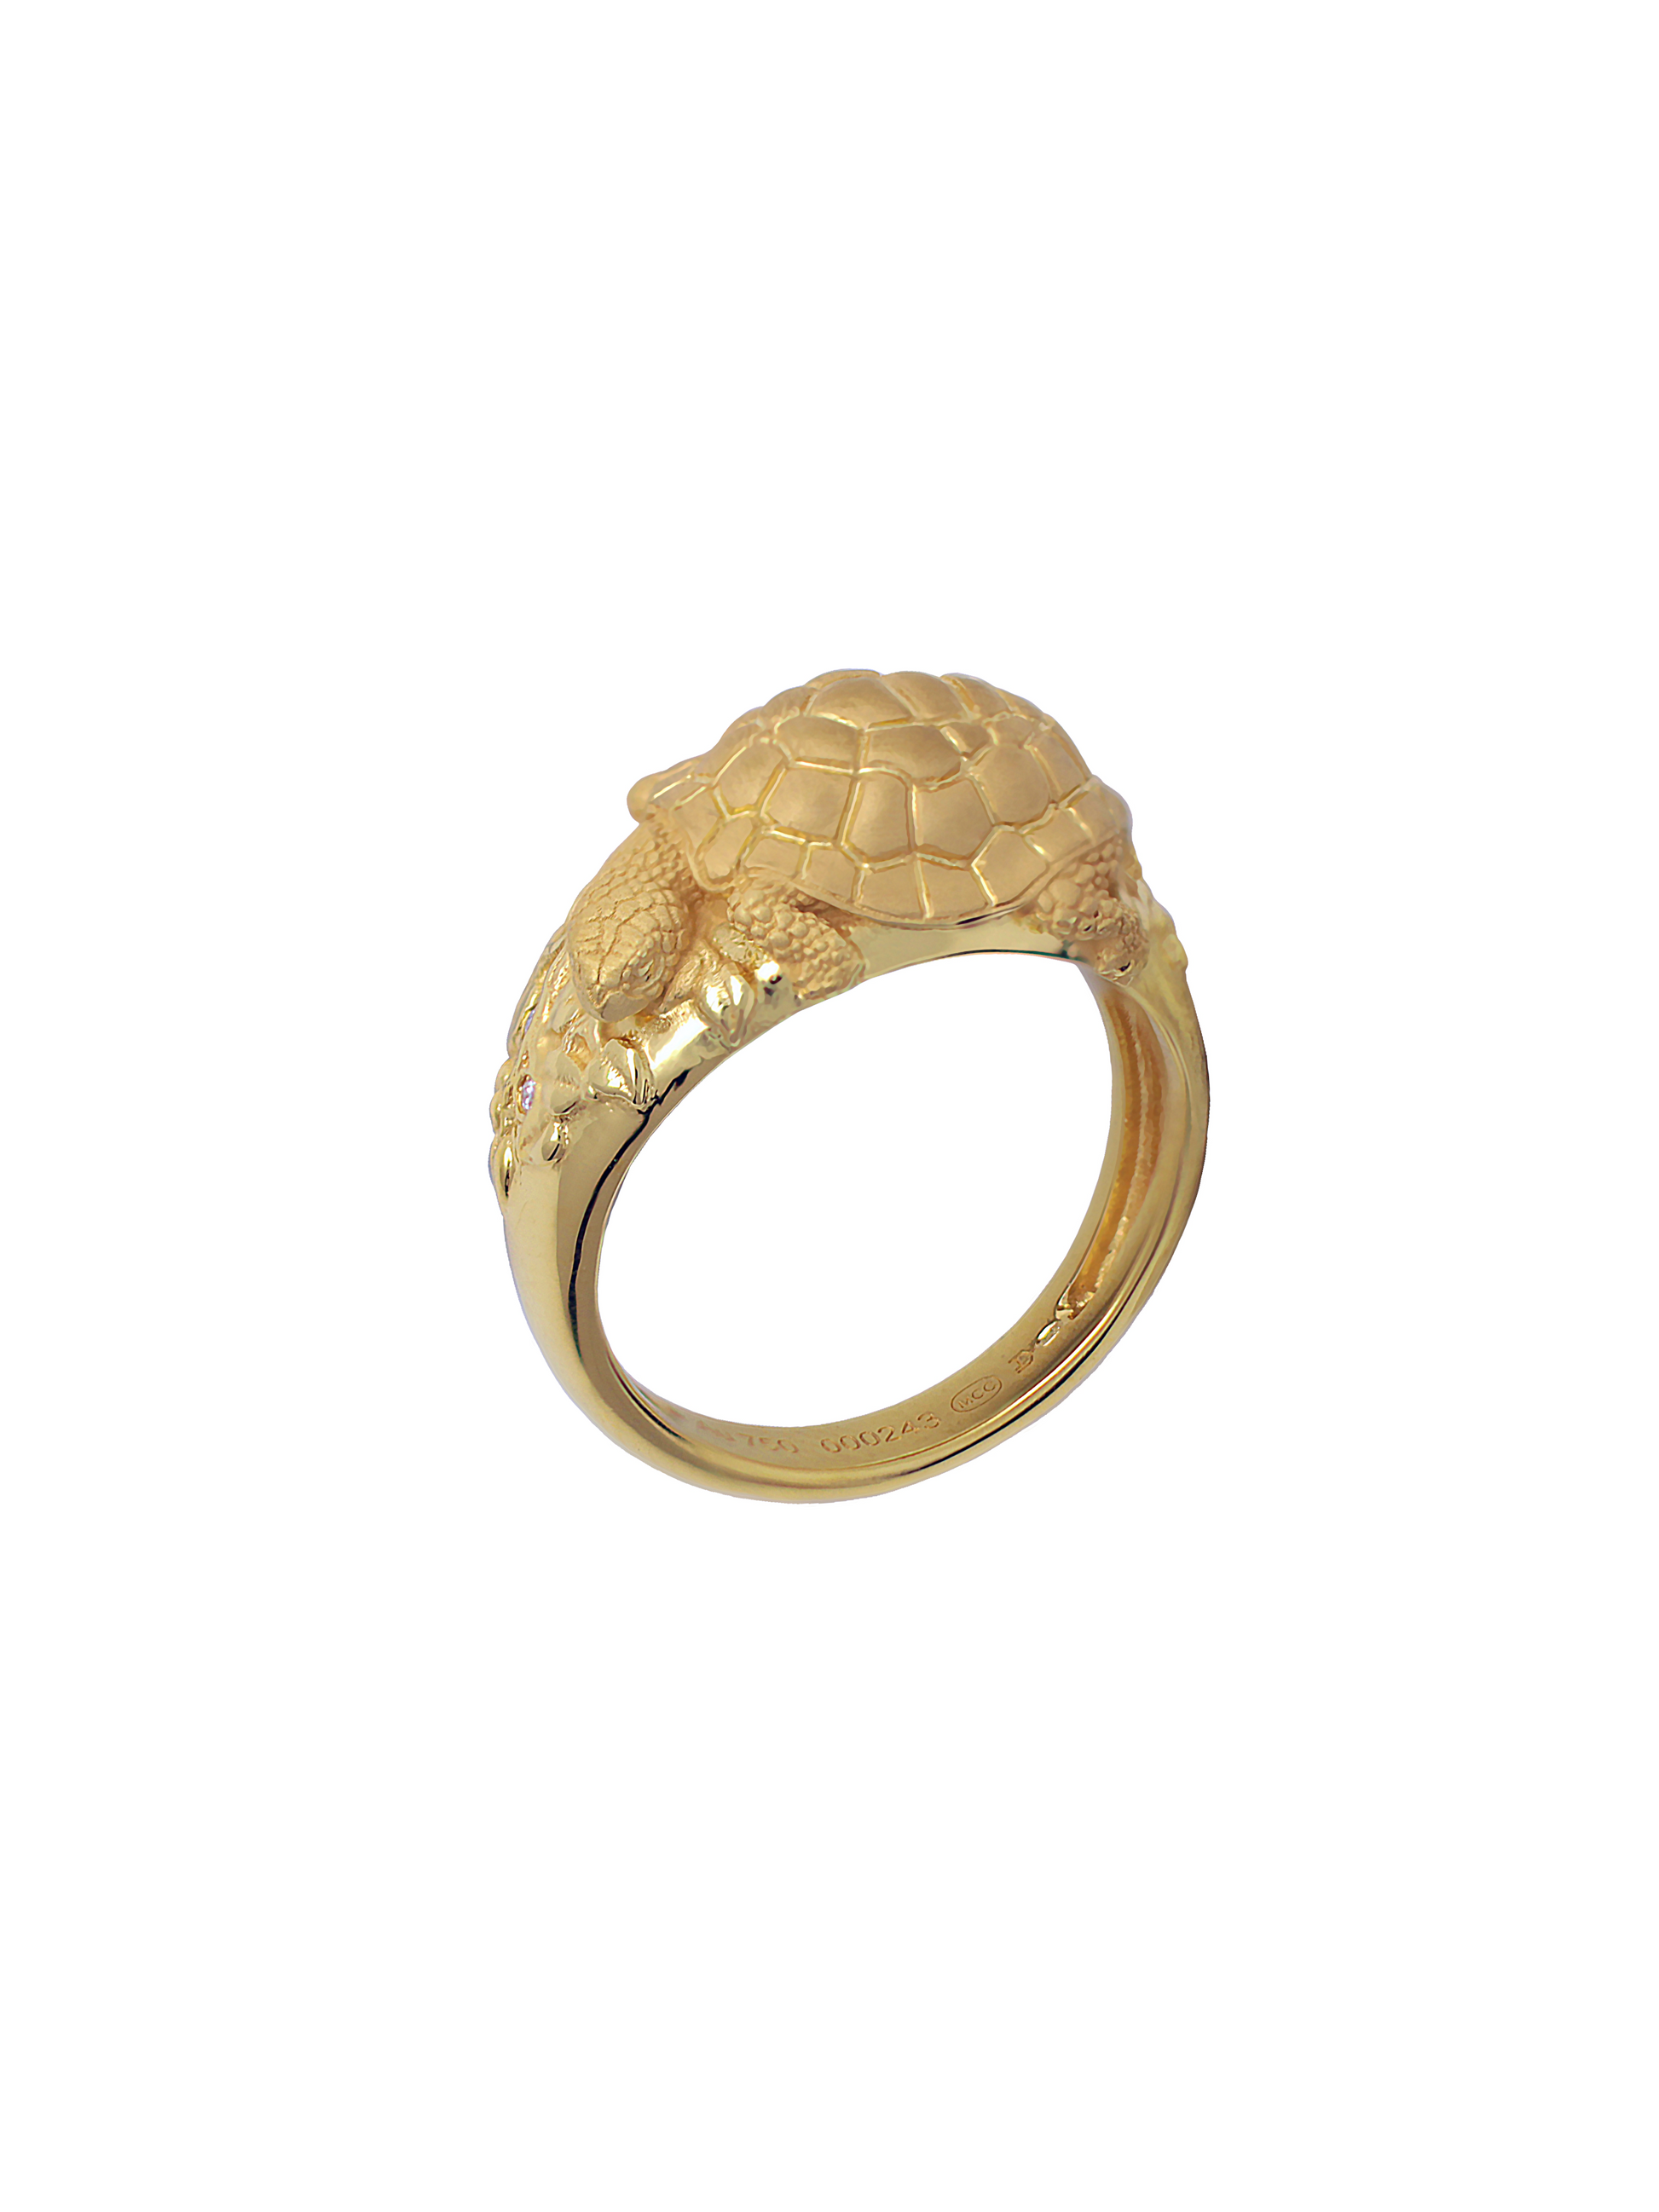 Gold Ring “LONGEVITY” - Manuel Carrera Cordon